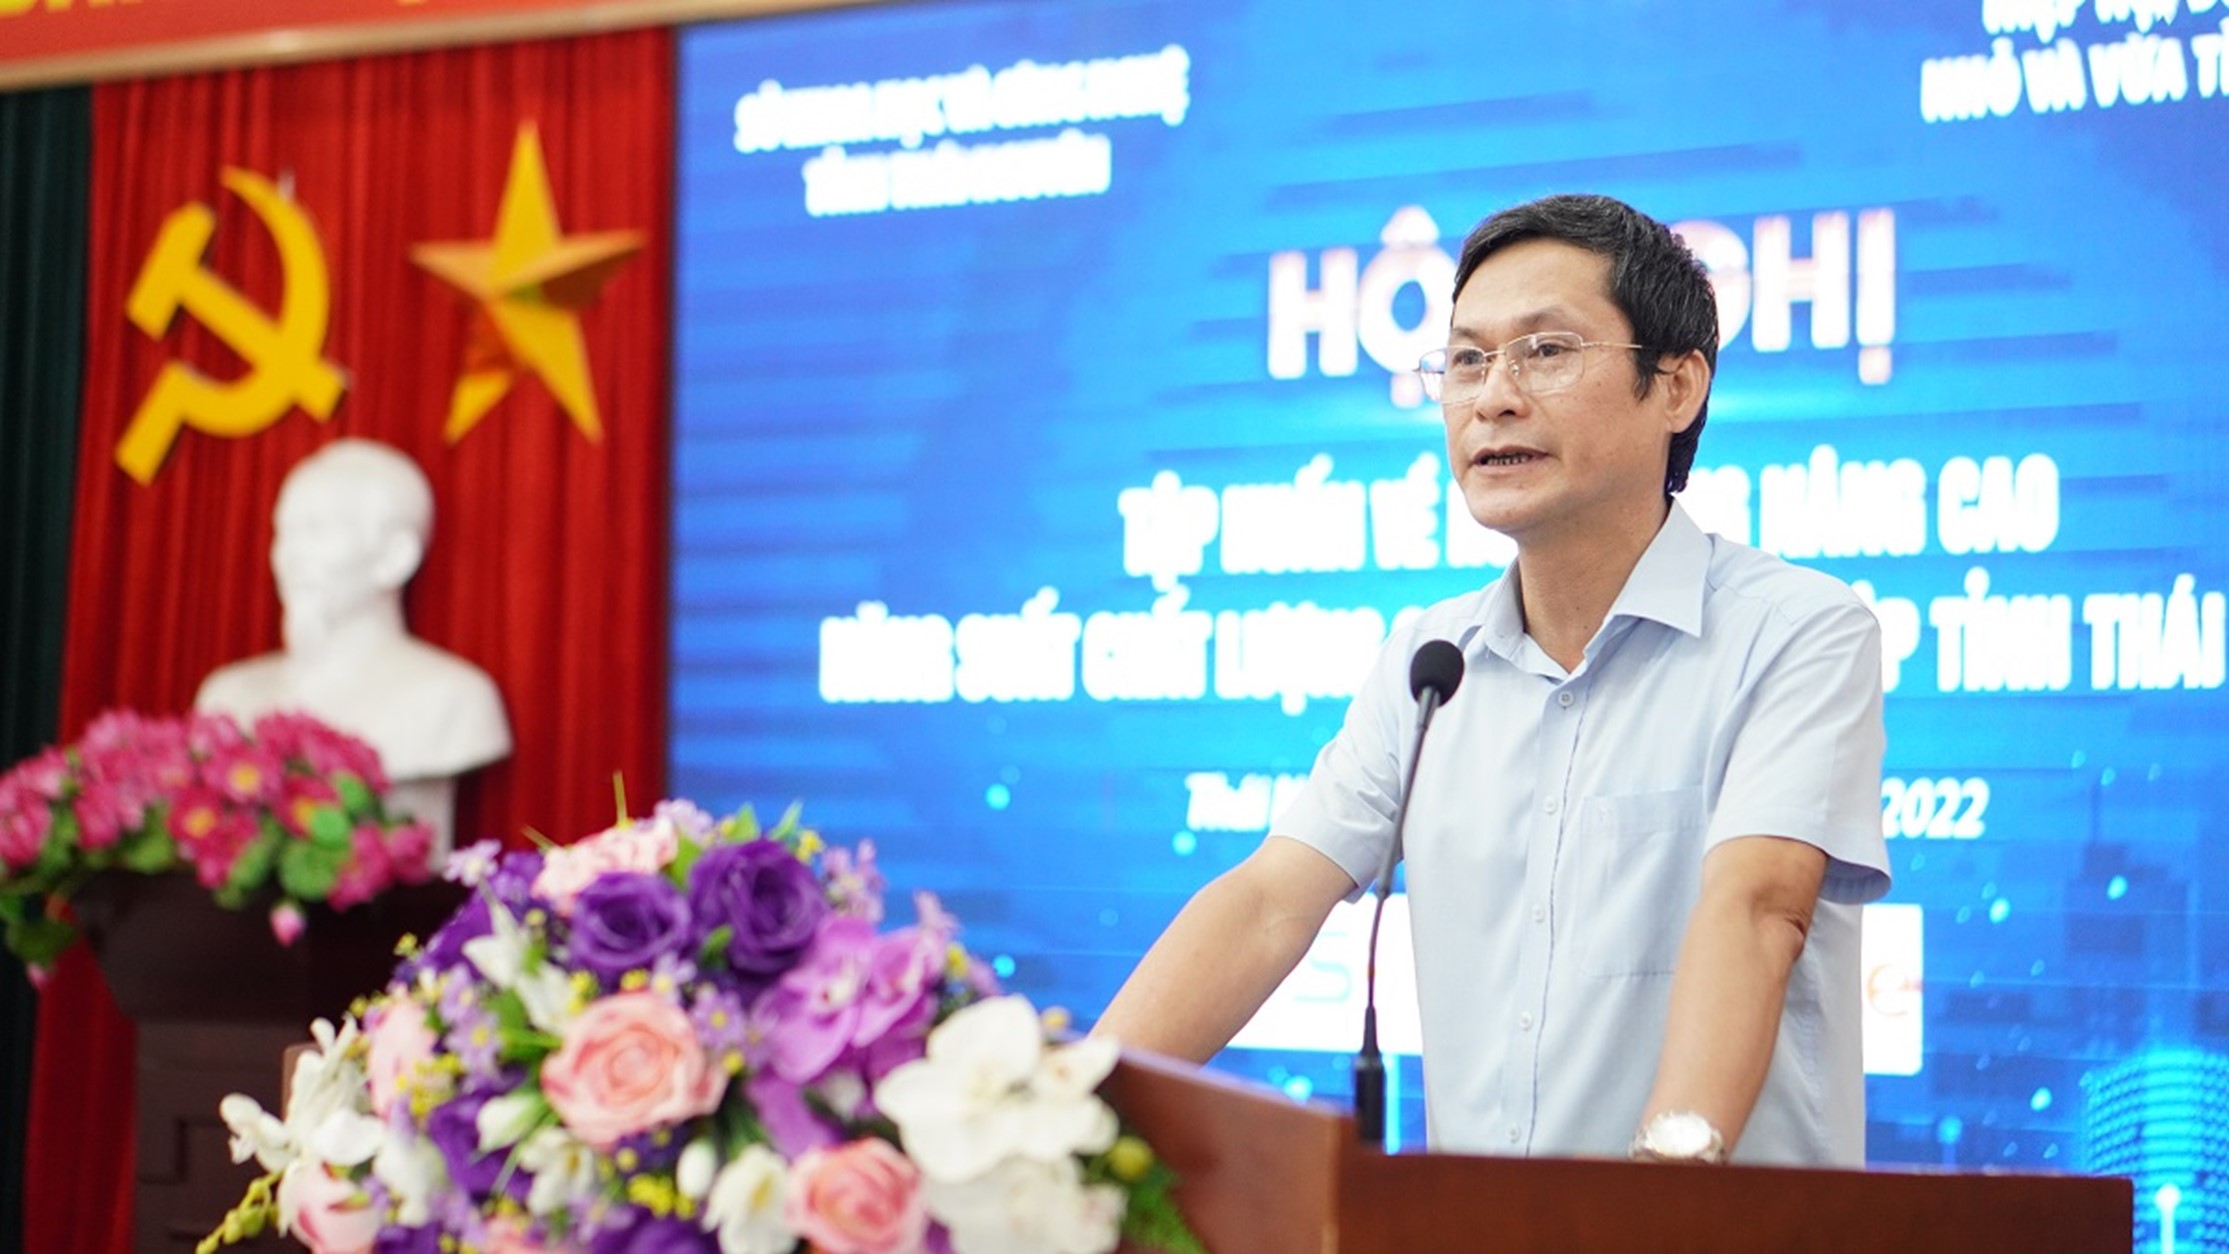 Tập huấn về hoạt động nâng cao năng suất chất lượng cho doanh nghiệp tỉnh Thái nguyên